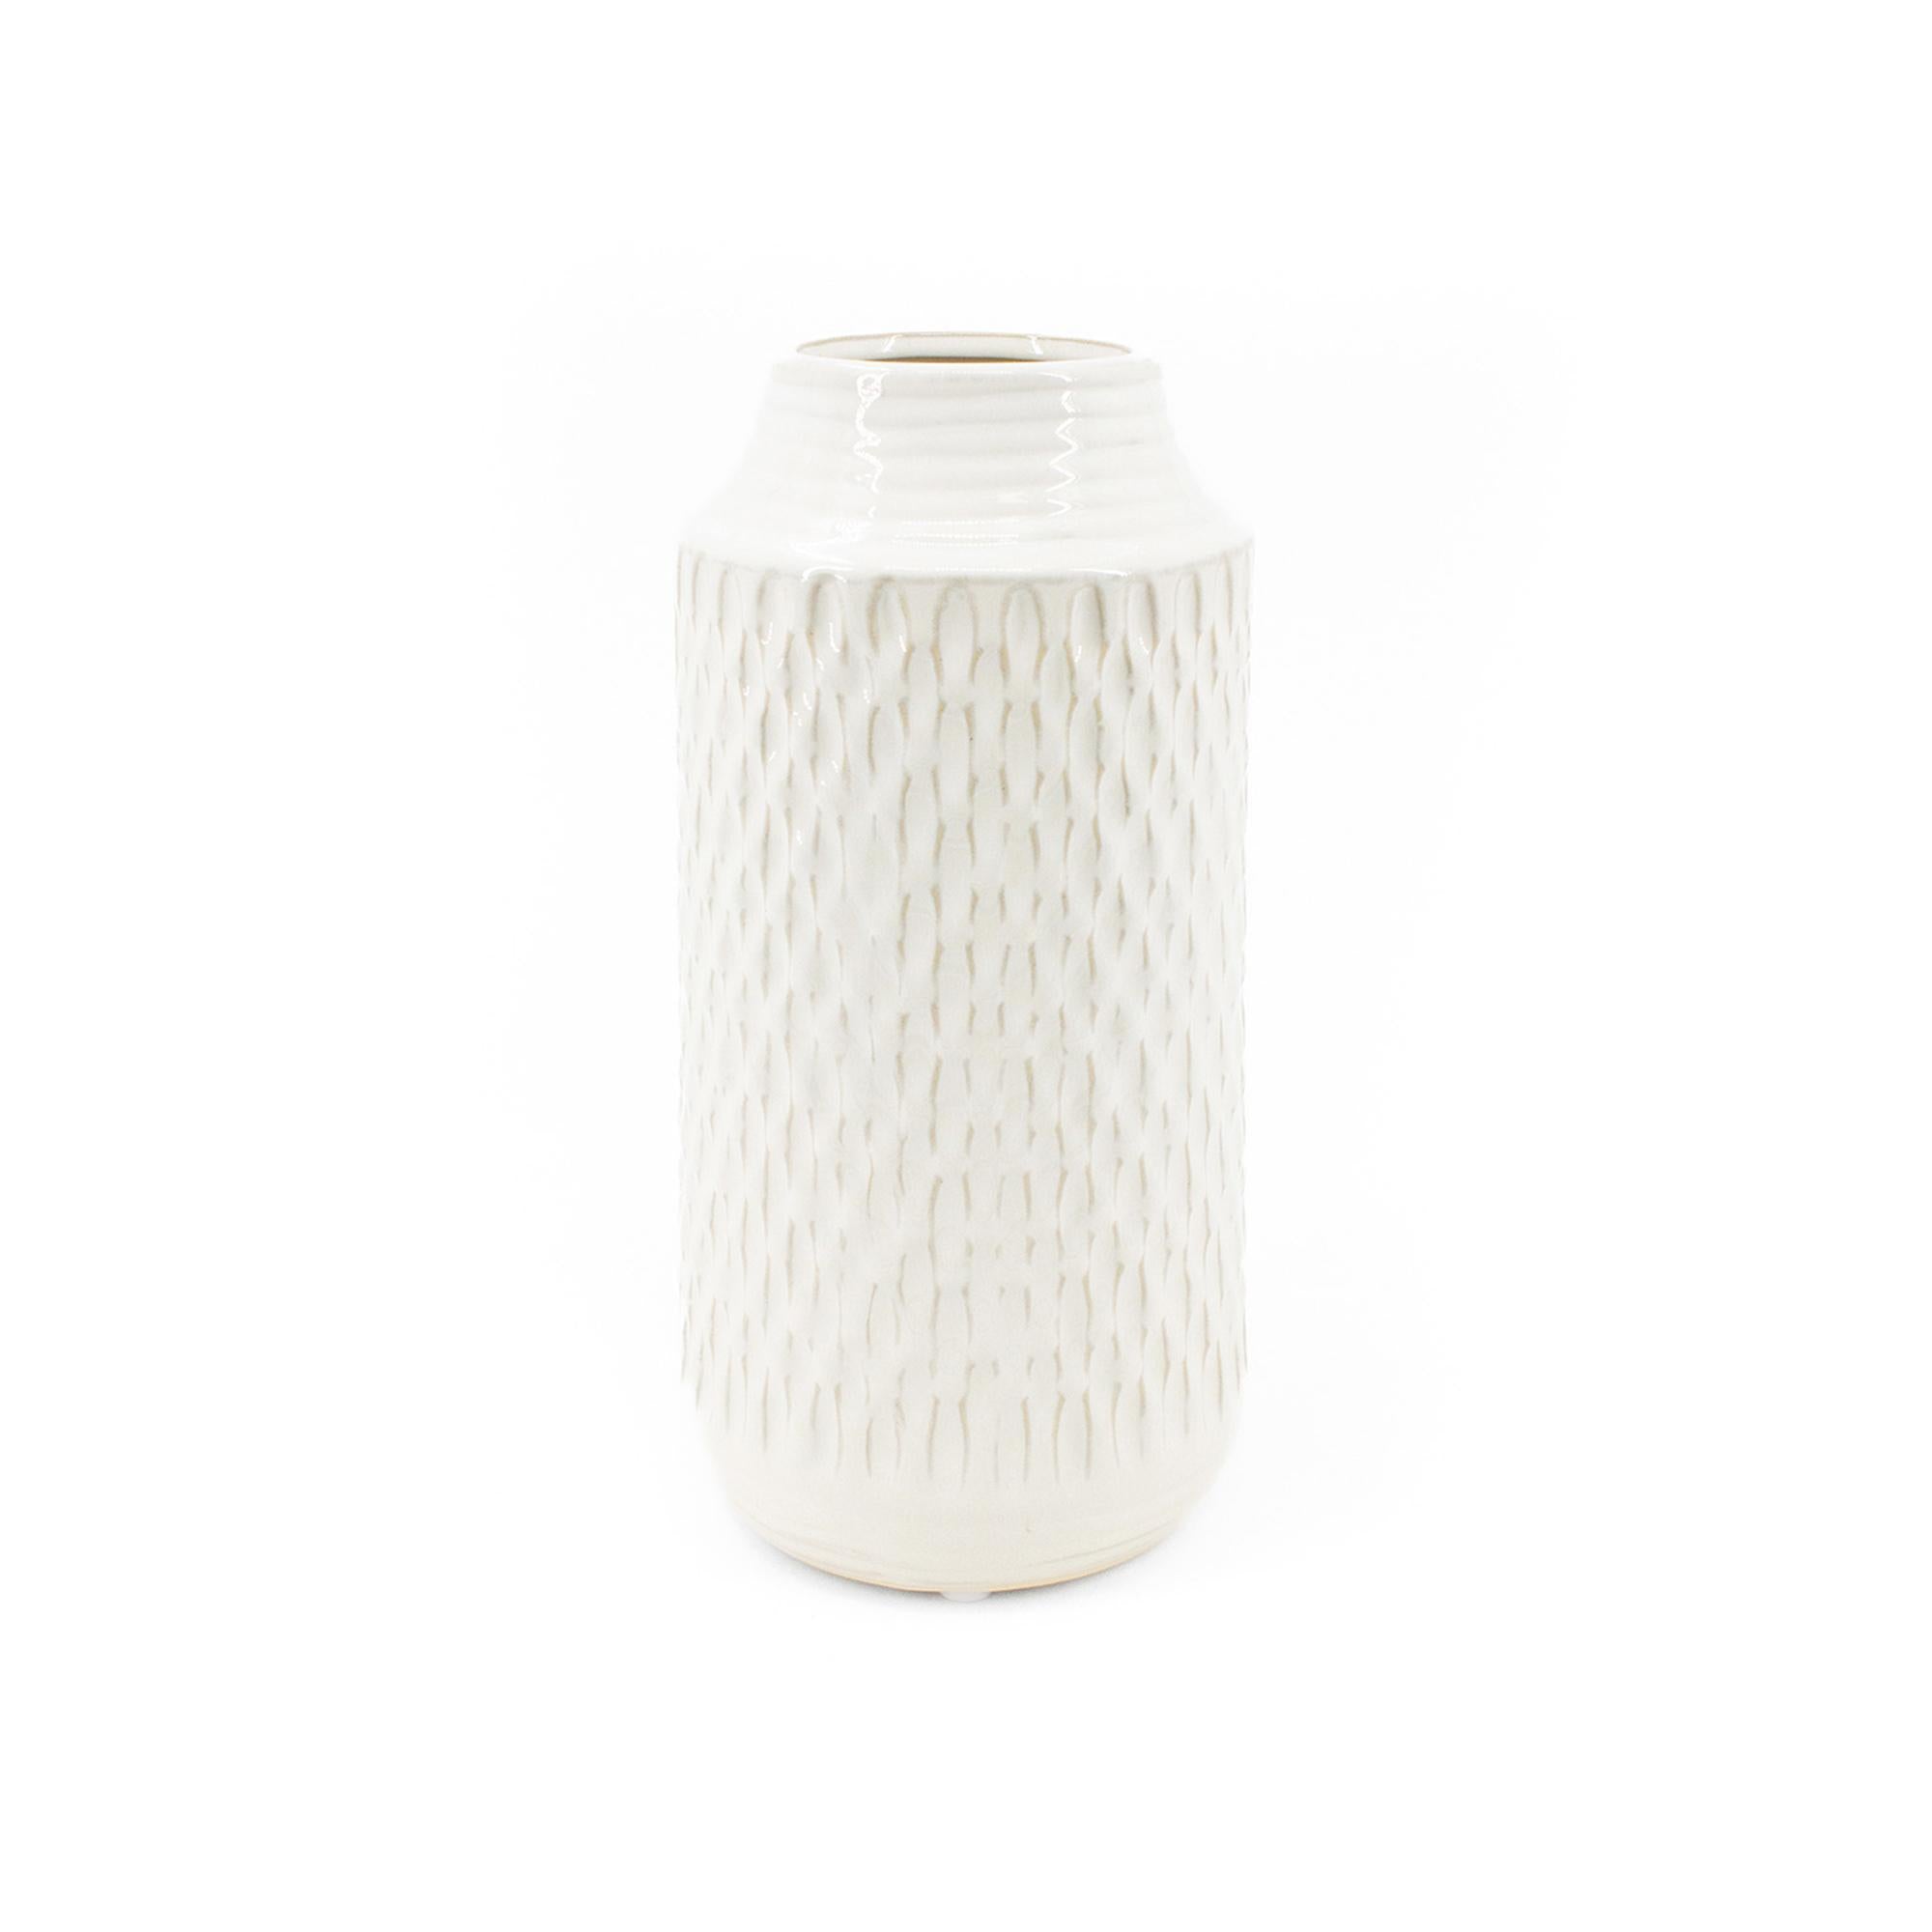 White Embossed Porcelain Jar - 10"H